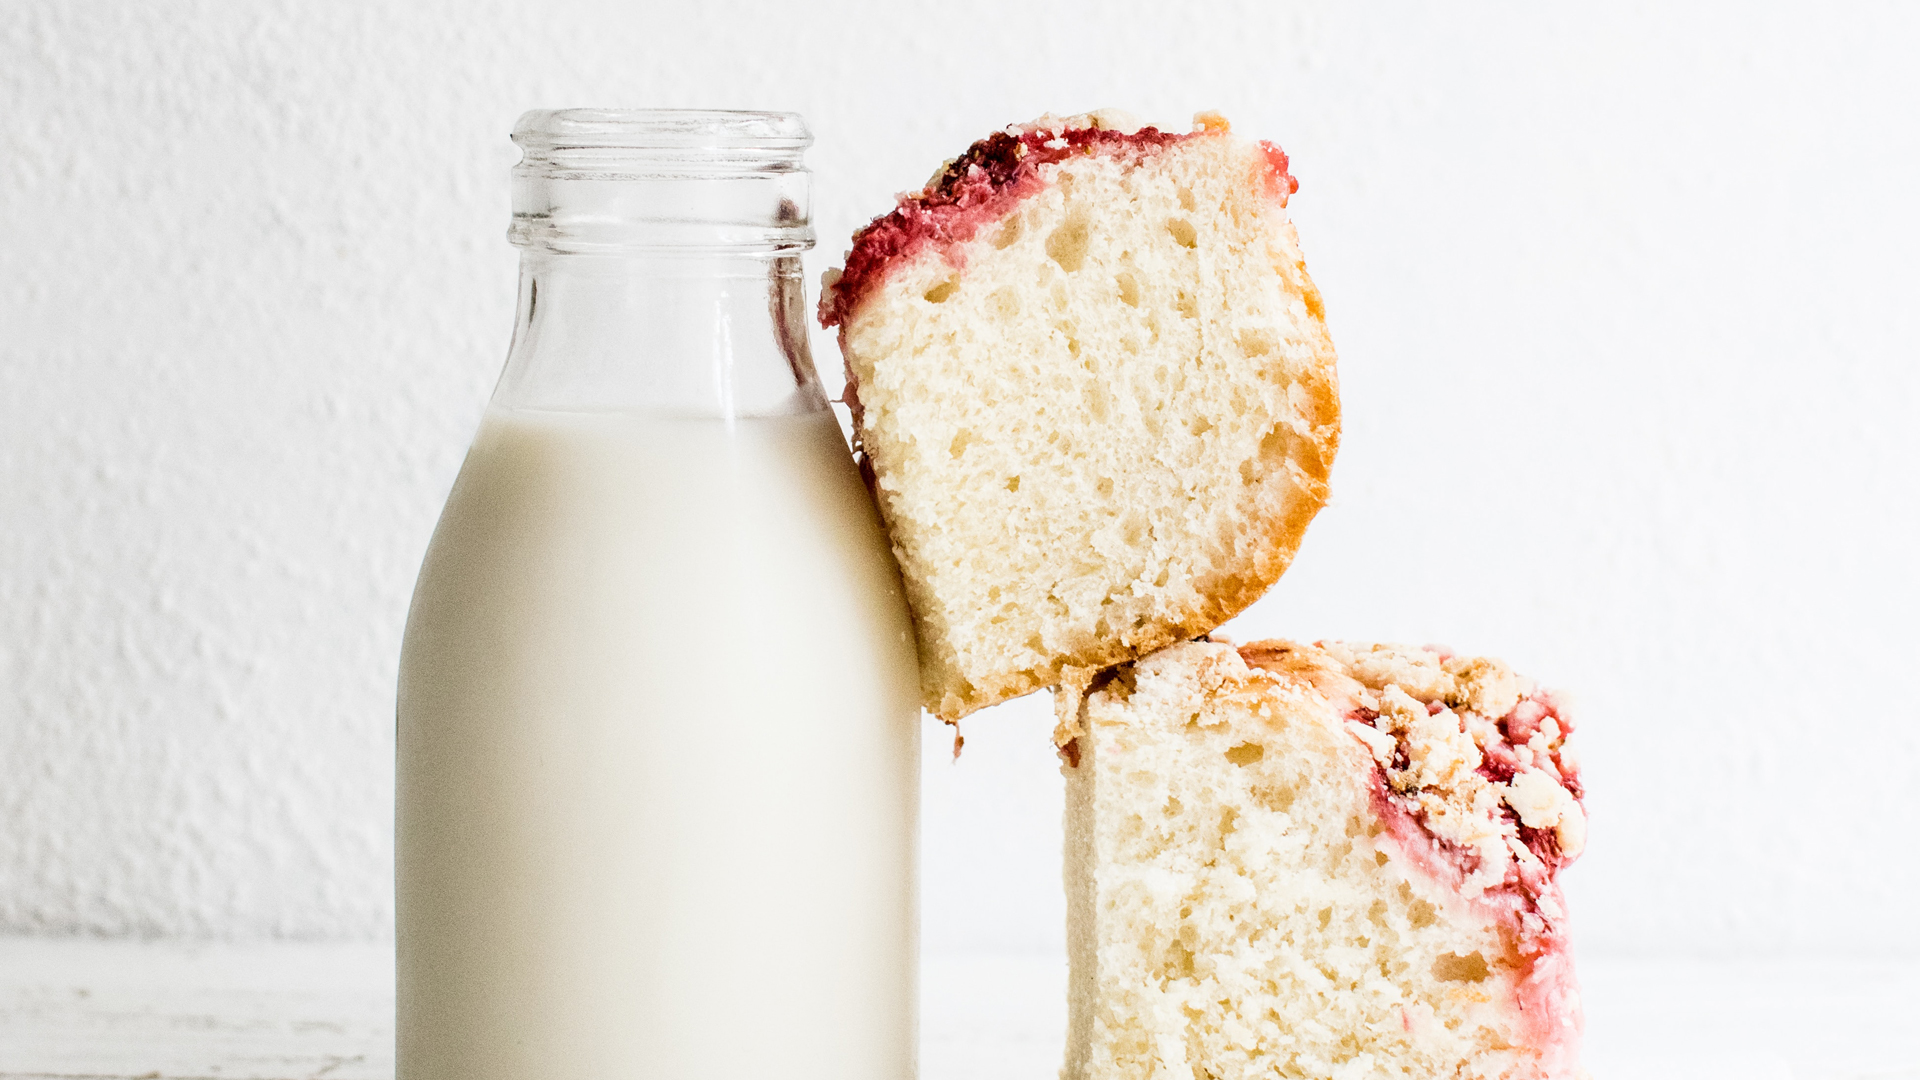 Uống sữa giảm cân - Cân nặng chỉ giảm khi biết chọn đúng loại sữa